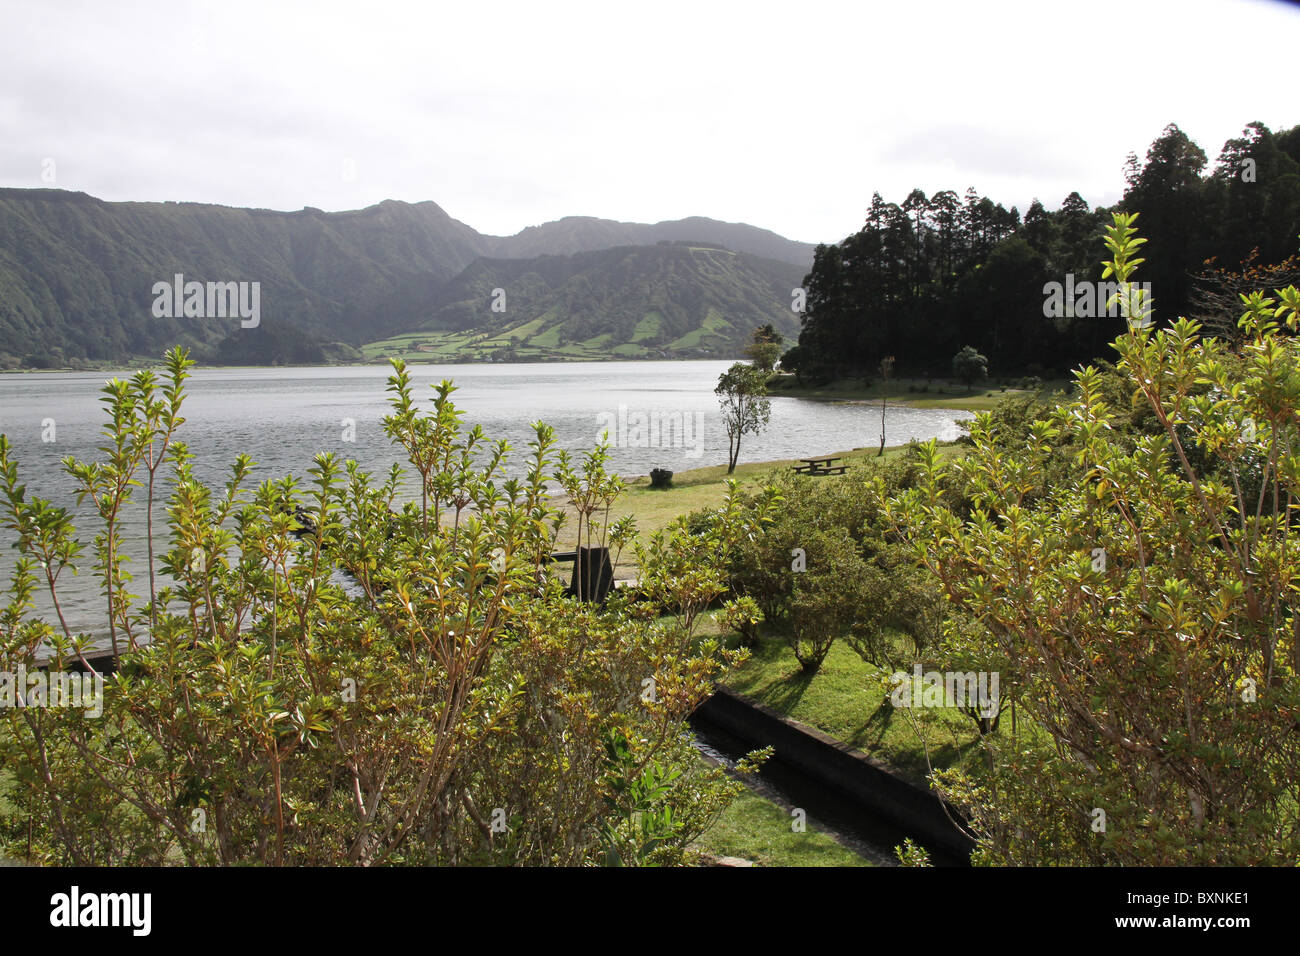 Le lac des Sept villes est un lac situé dans un cratère énorme sur l'archipel portugais des Açores. Banque D'Images